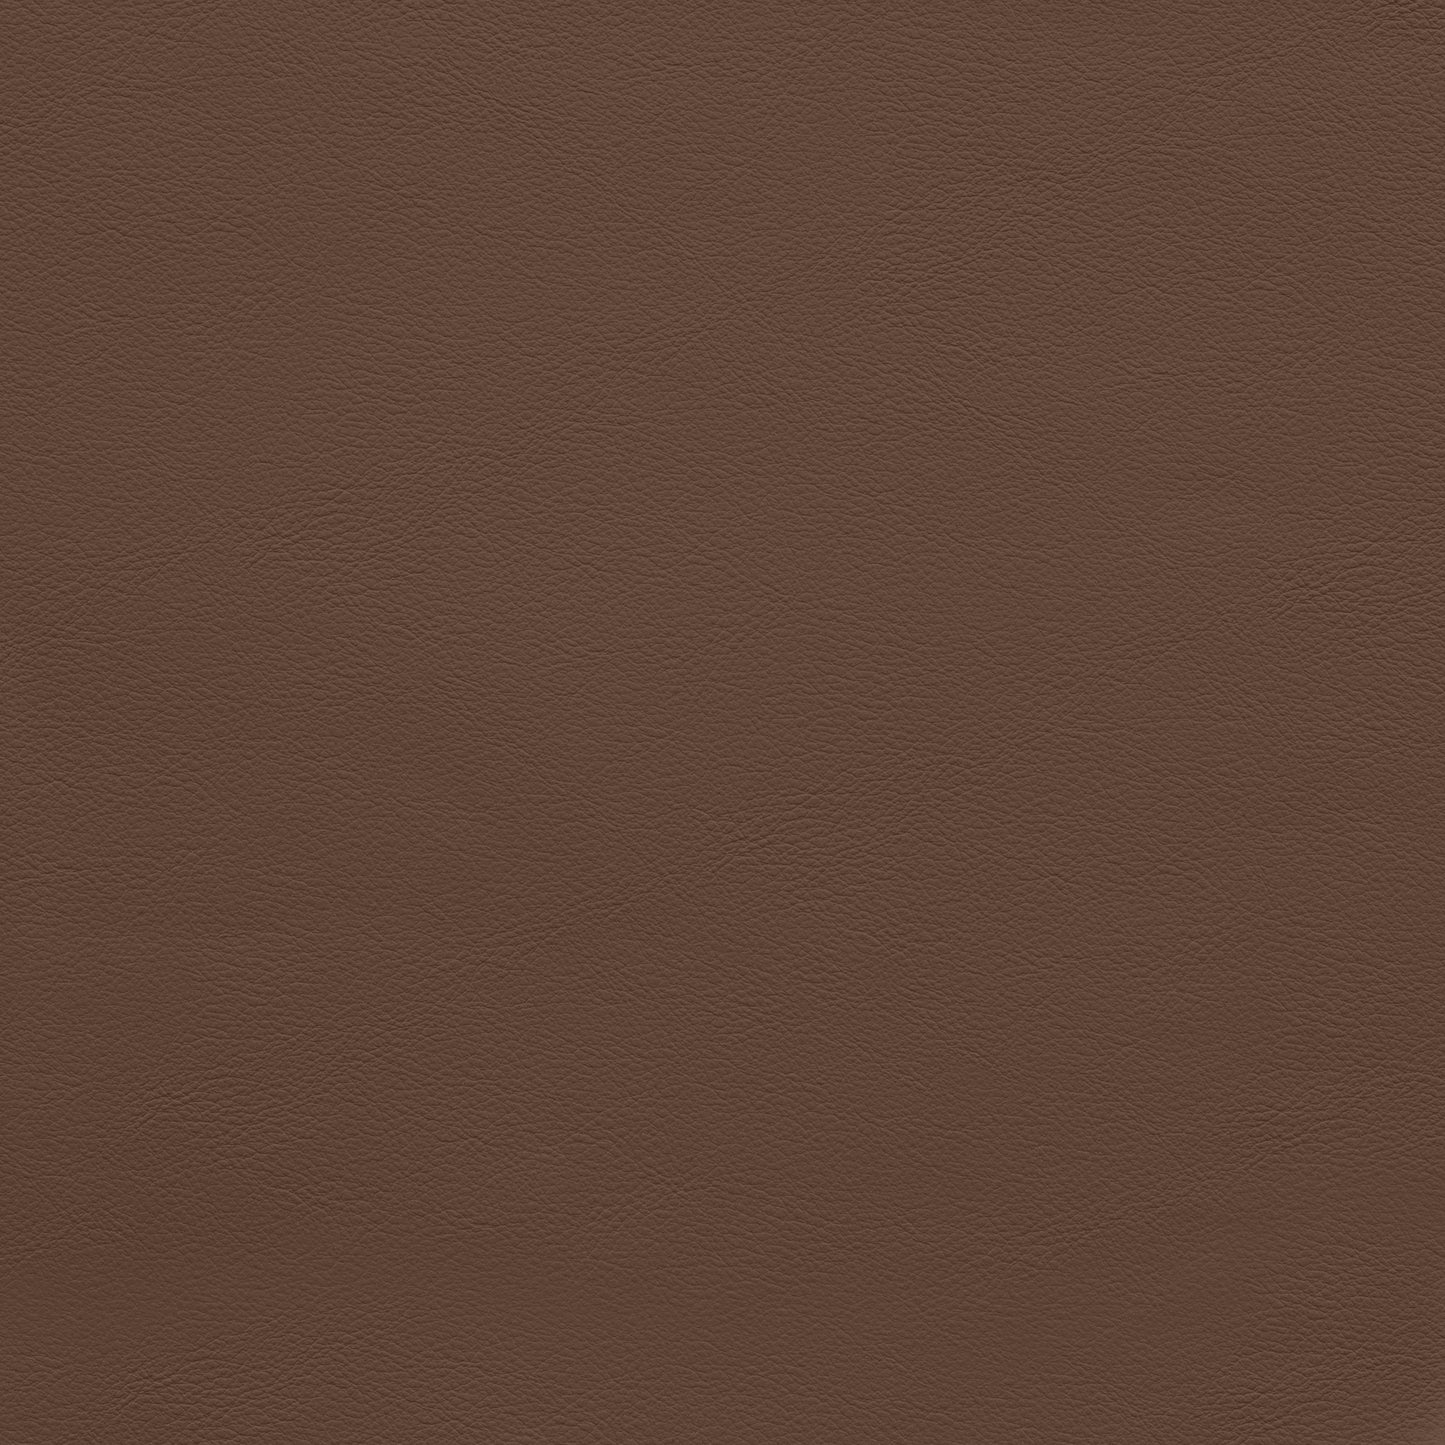 zara brown faux leather modular sofa s3f